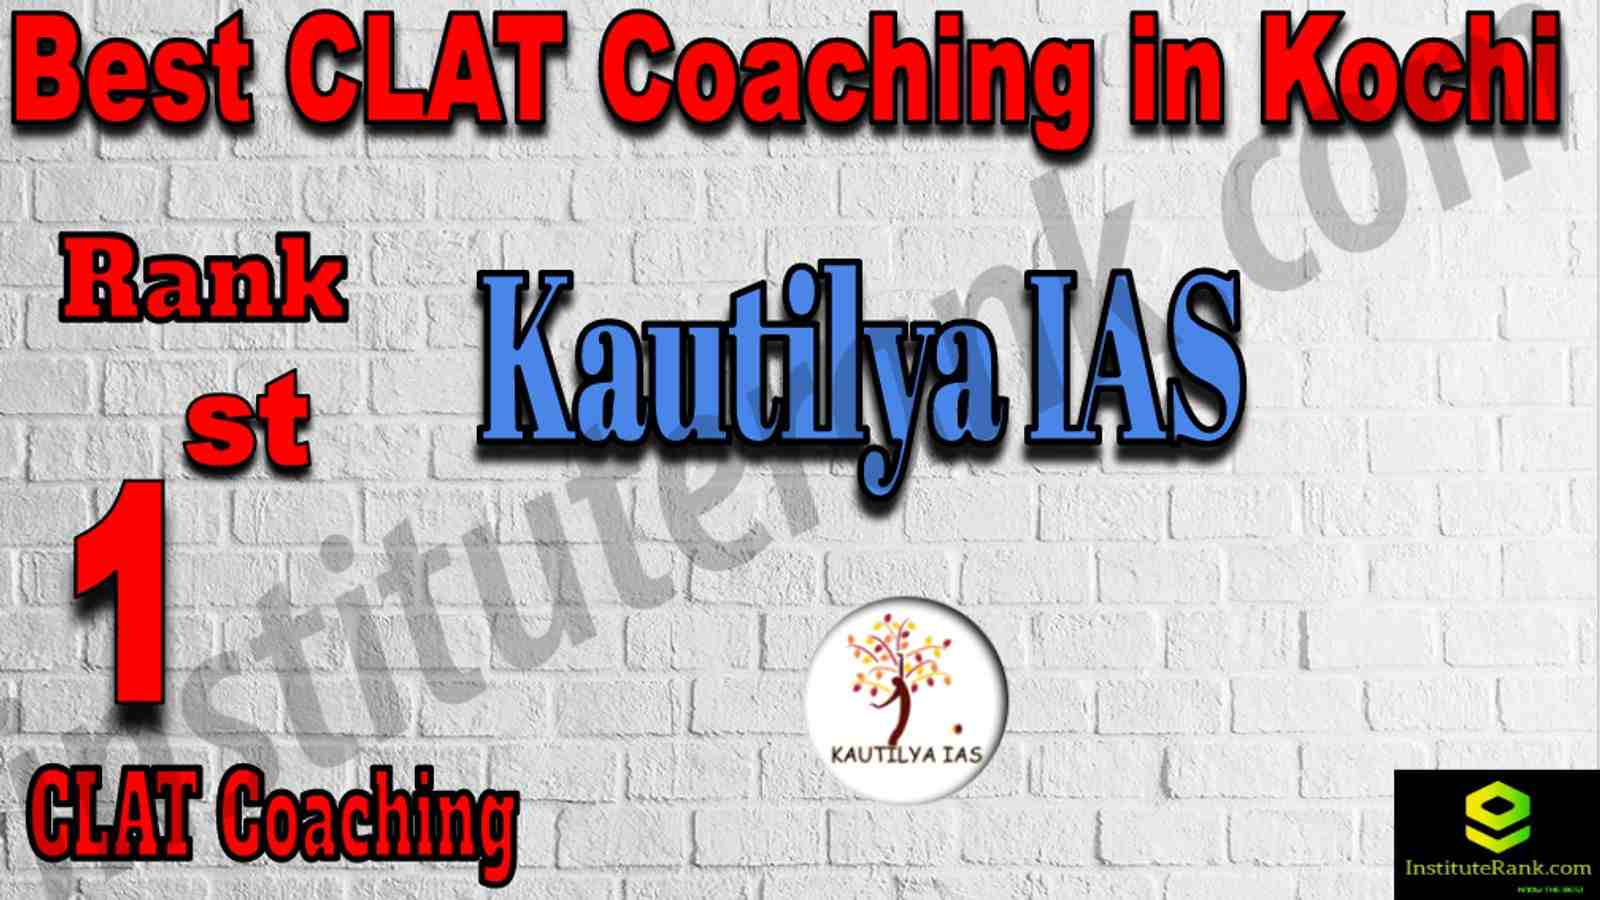 1st Best CLAT Coaching in Kochi